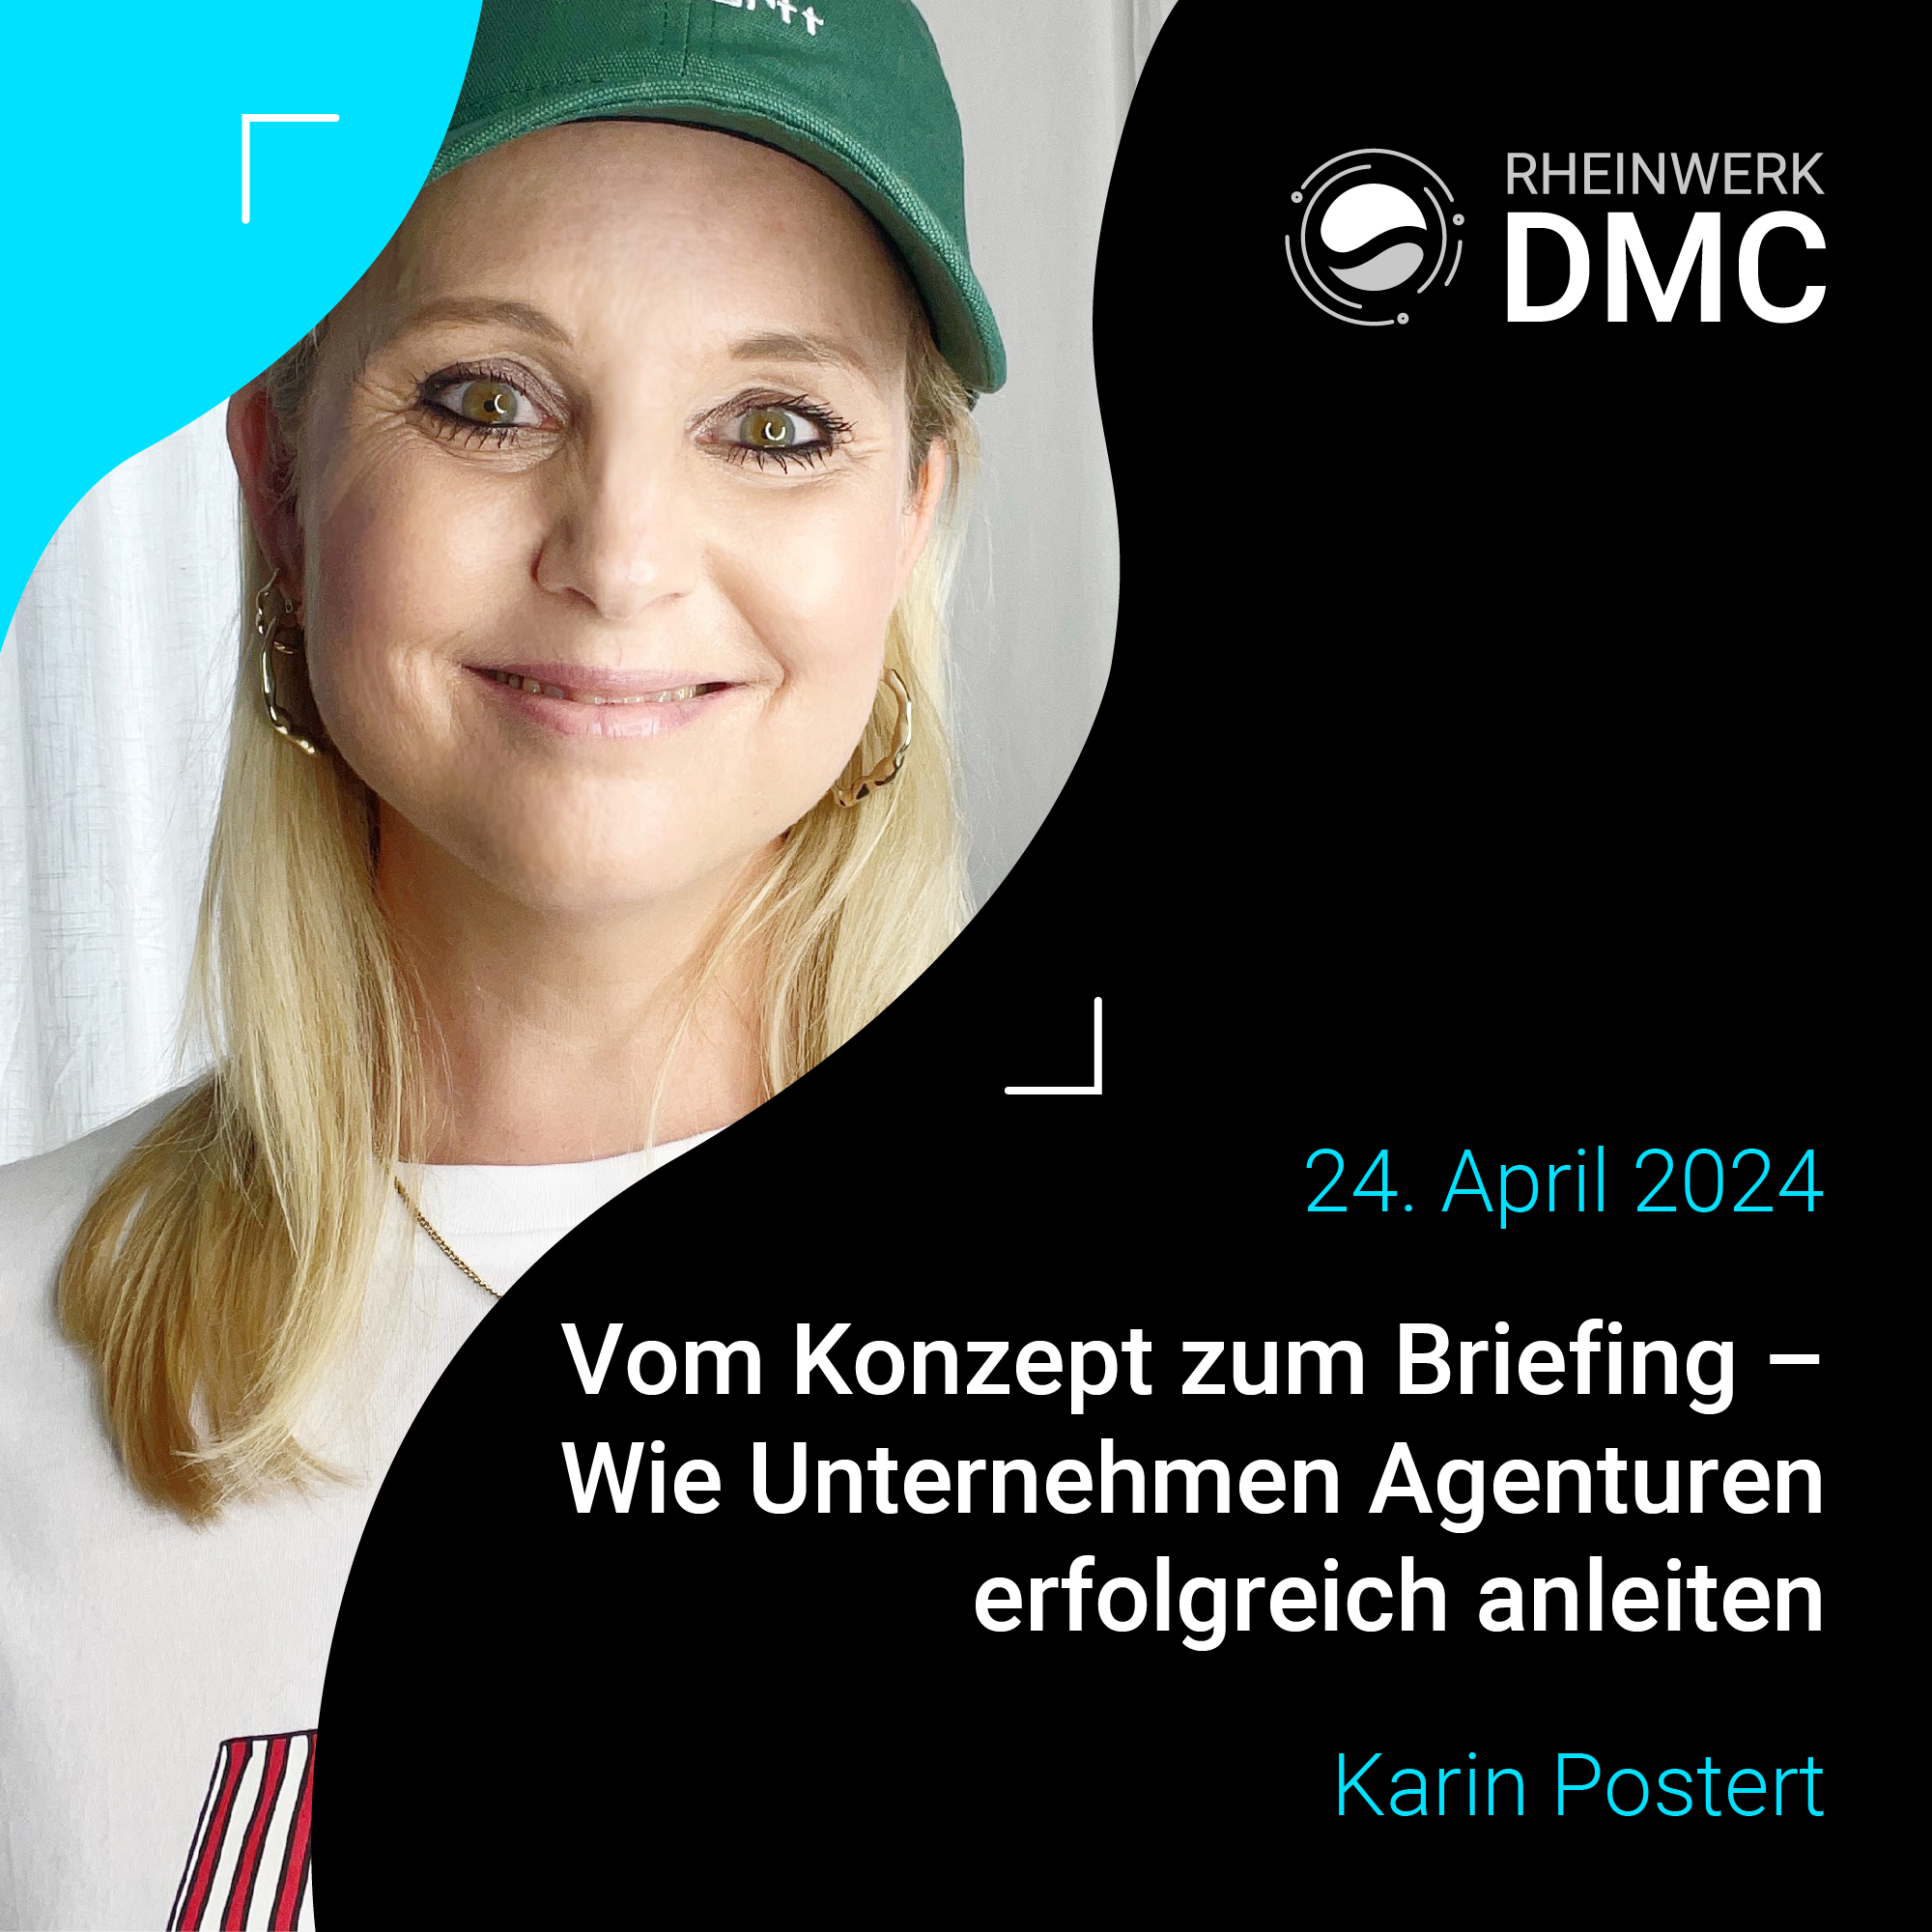 Karin Postert Speaker DMC